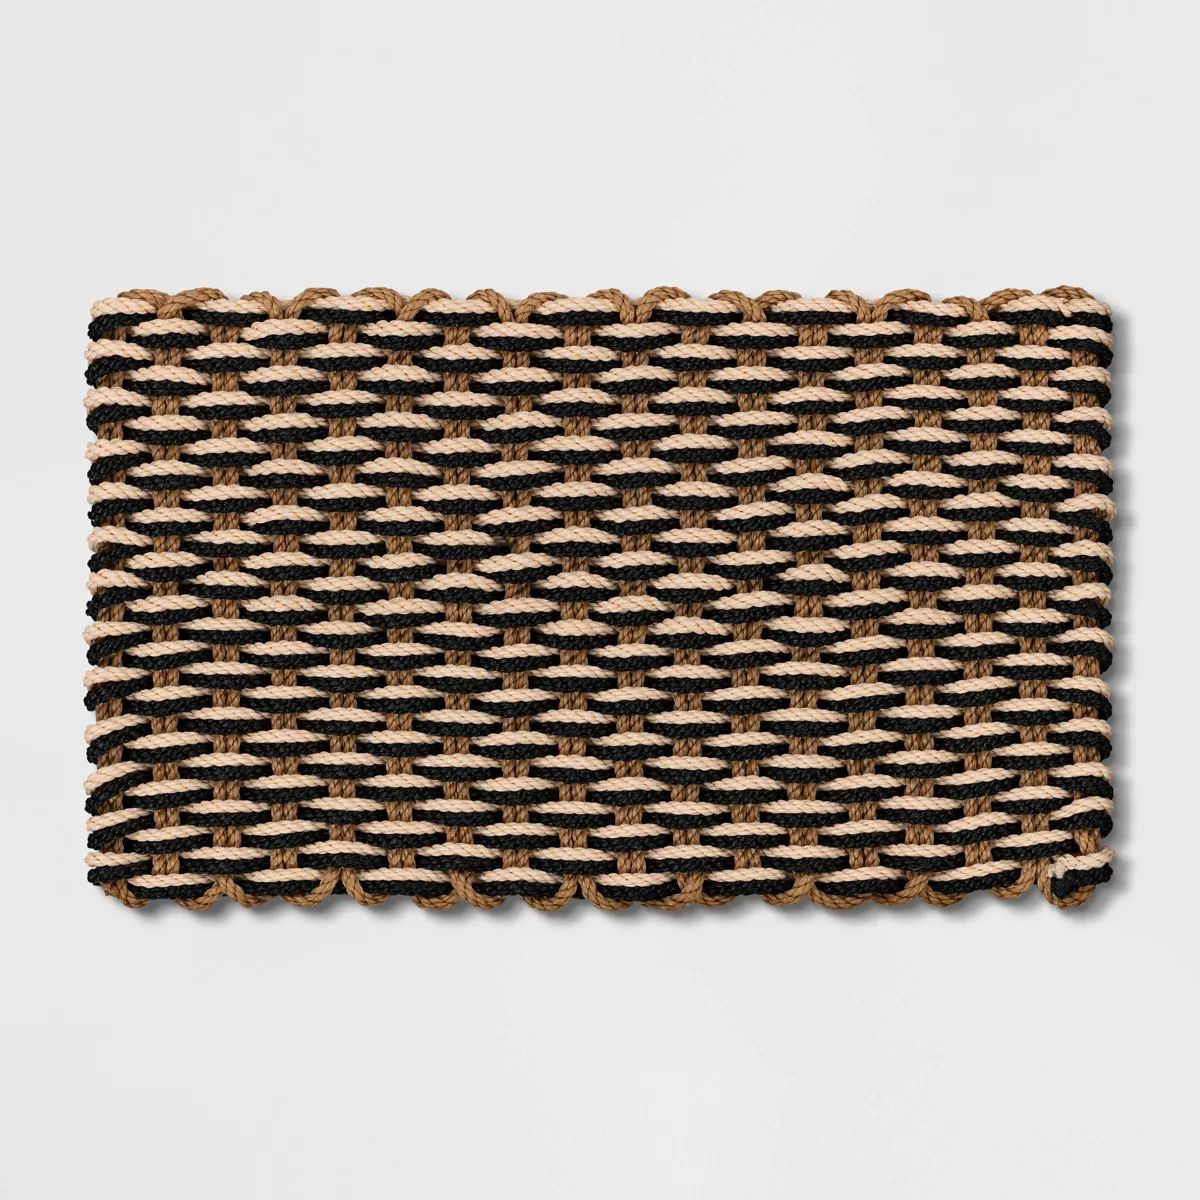 1'6"x2'6" Rope Braided Basket Weave Doormat Black/Brown/Cream - Threshold™ | Target